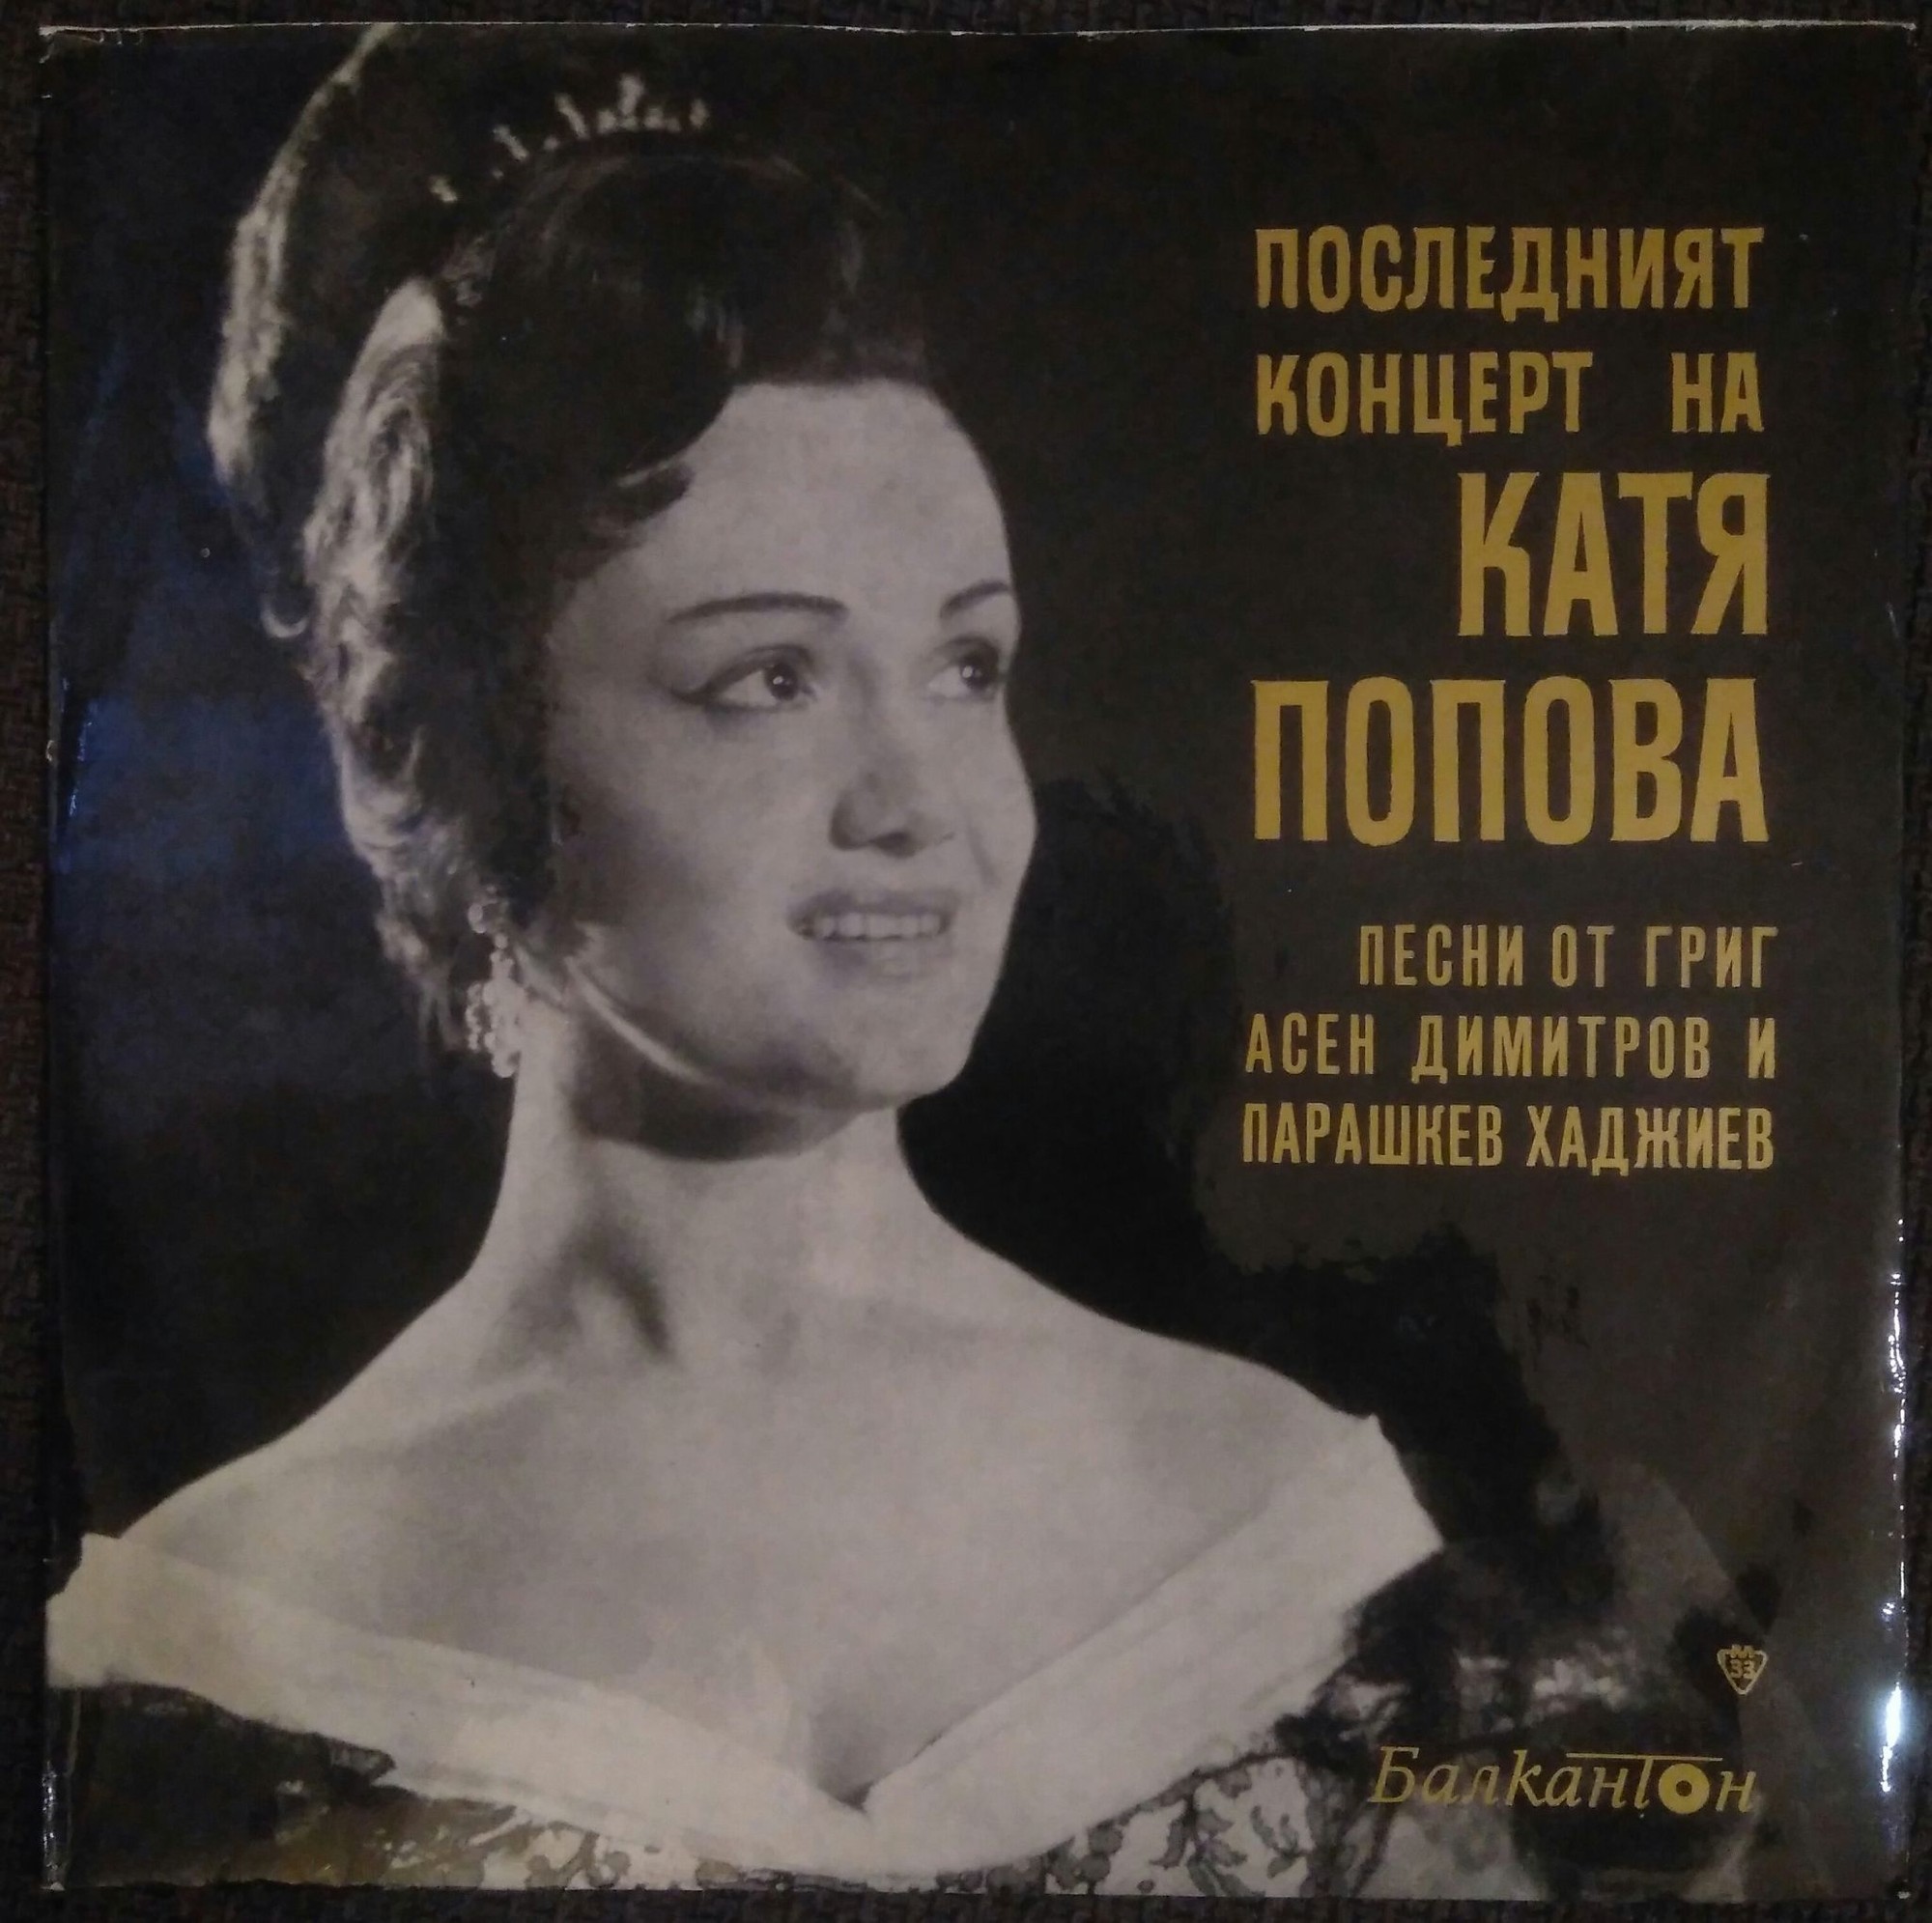 Последният концерт на Катя Попова. Песни от Григ, Асен Димитров и Парашкев Хаджиев